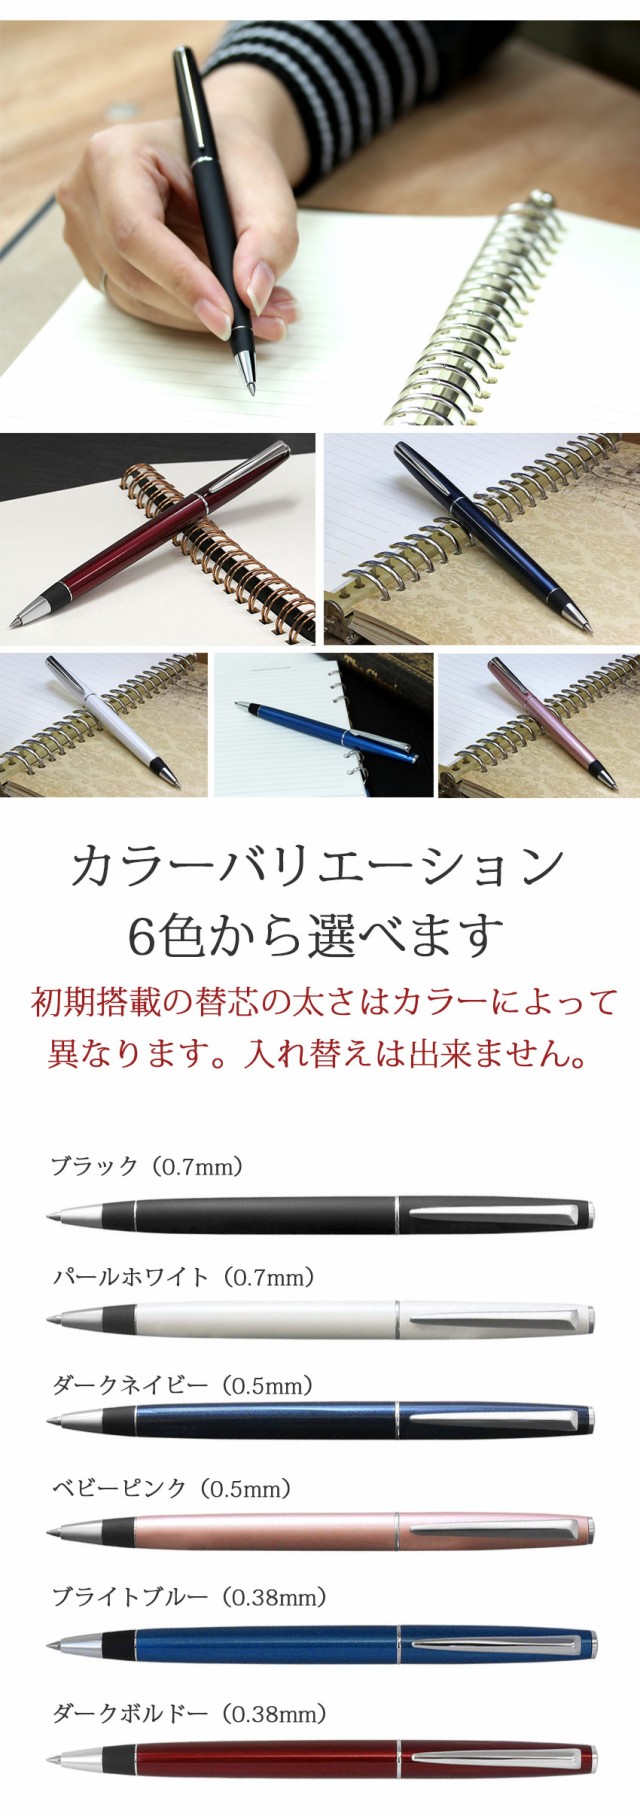 [三菱鉛筆]ジェットストリームプライムシングル回転繰り出し式シングルモデルボールペン0.5mm0.7mm